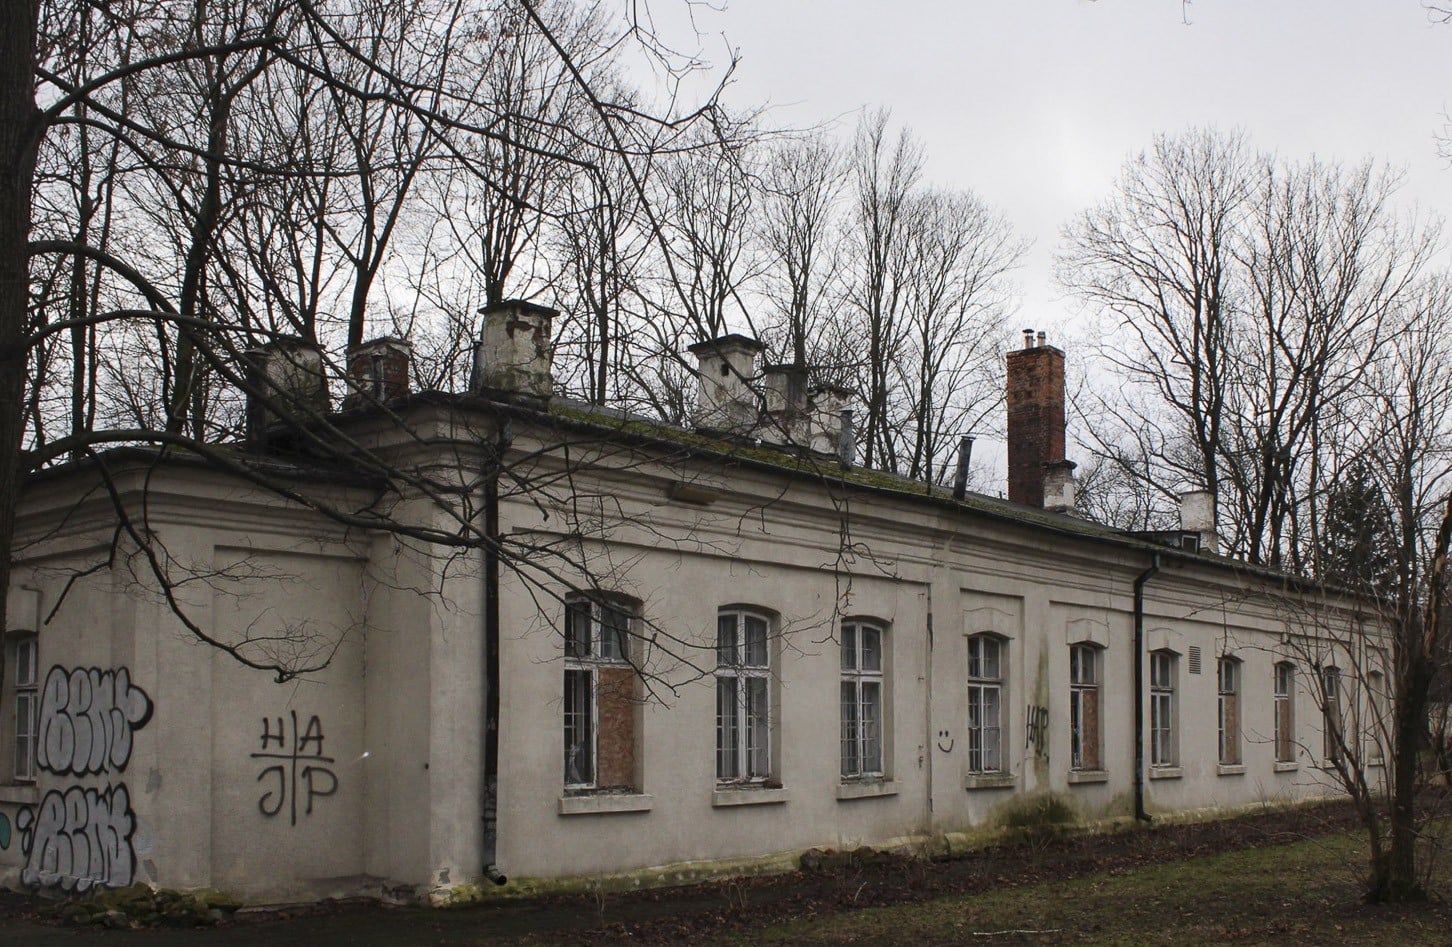 Wydano nakaz poprawy stanu technicznego jednego z budynków dawnego Szpitala Ujazdowskiego